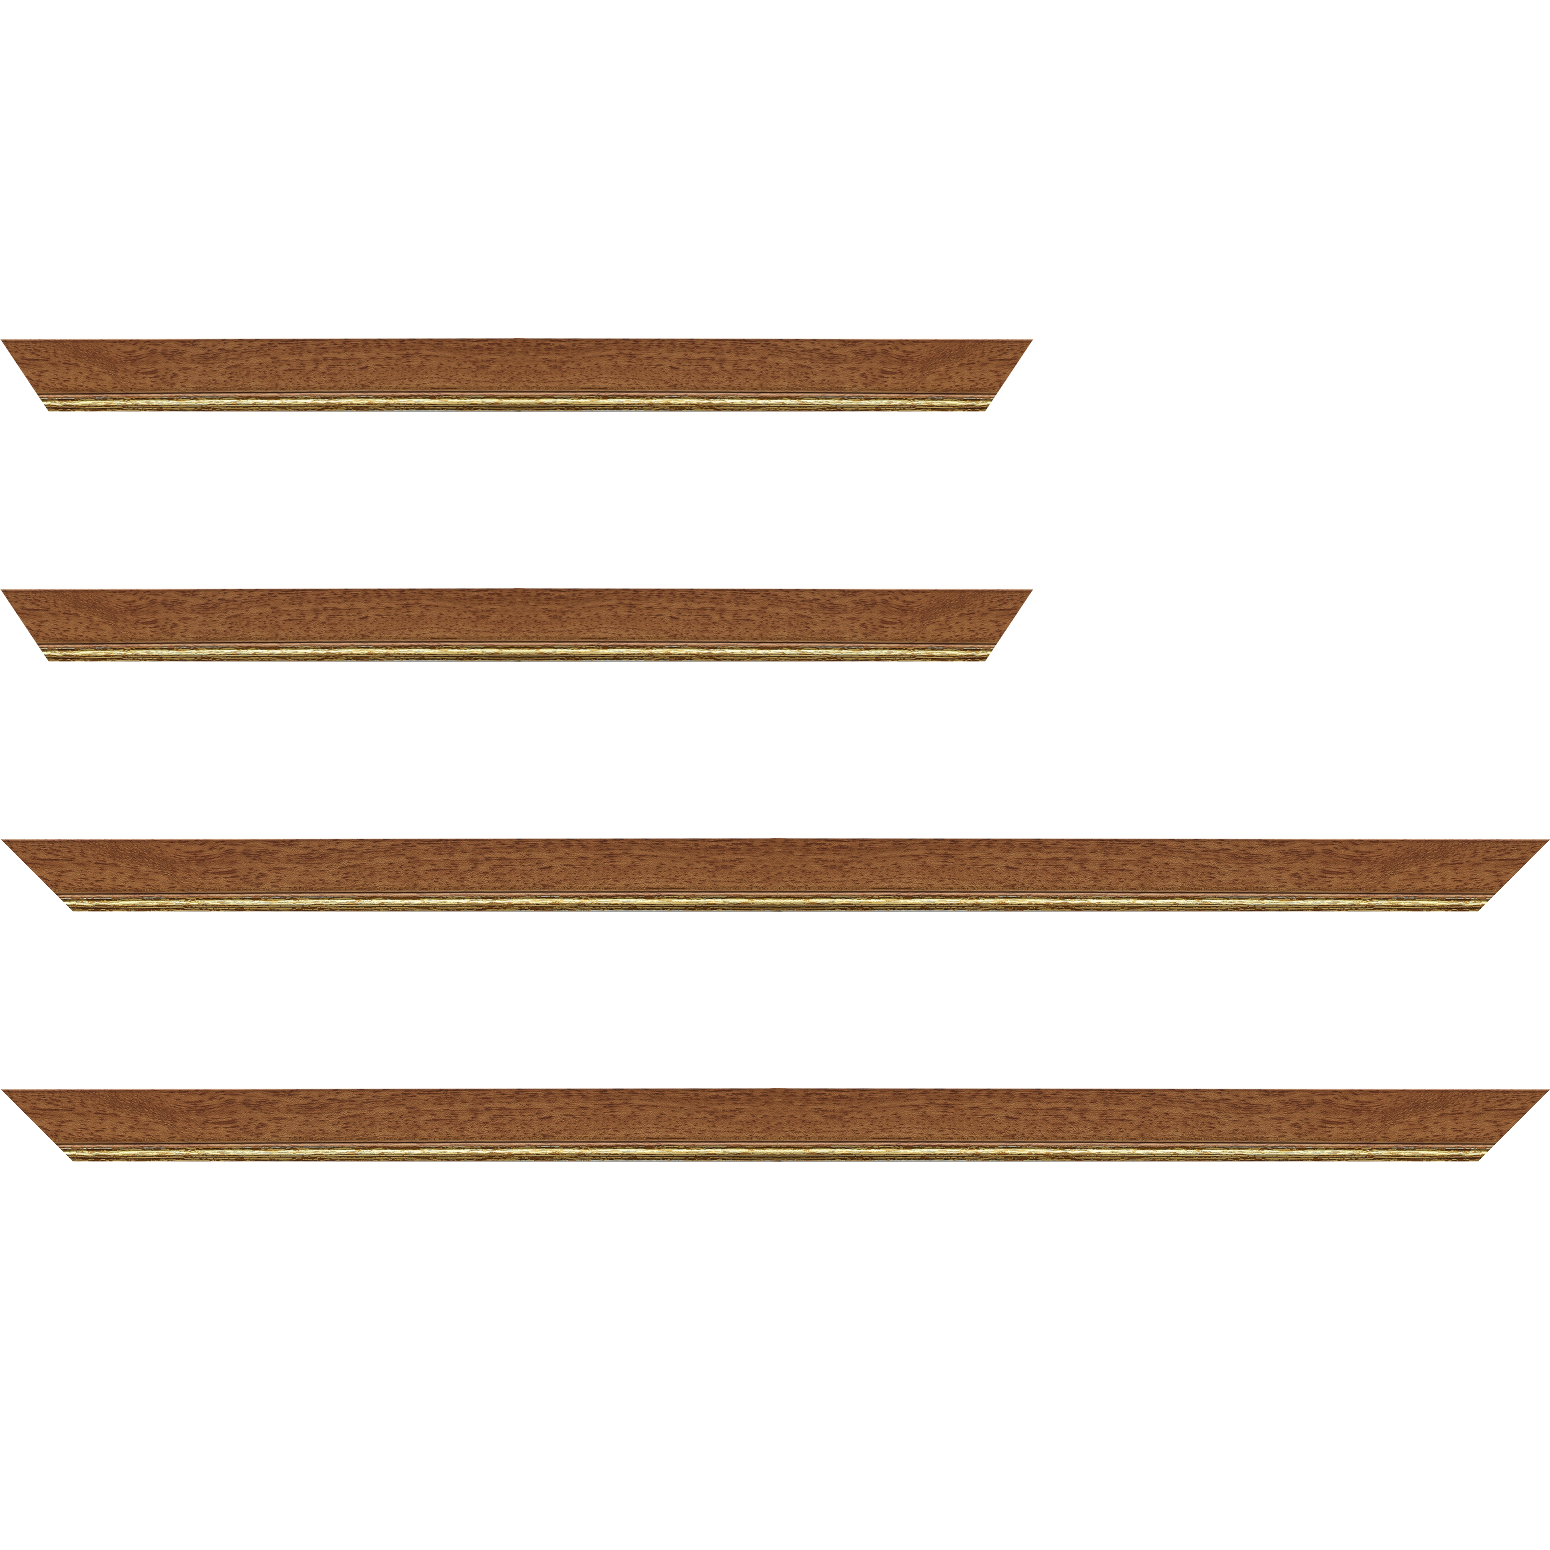 Baguette bois profil plat largeur 2.5cm couleur marron ton bois filet or - 35x24